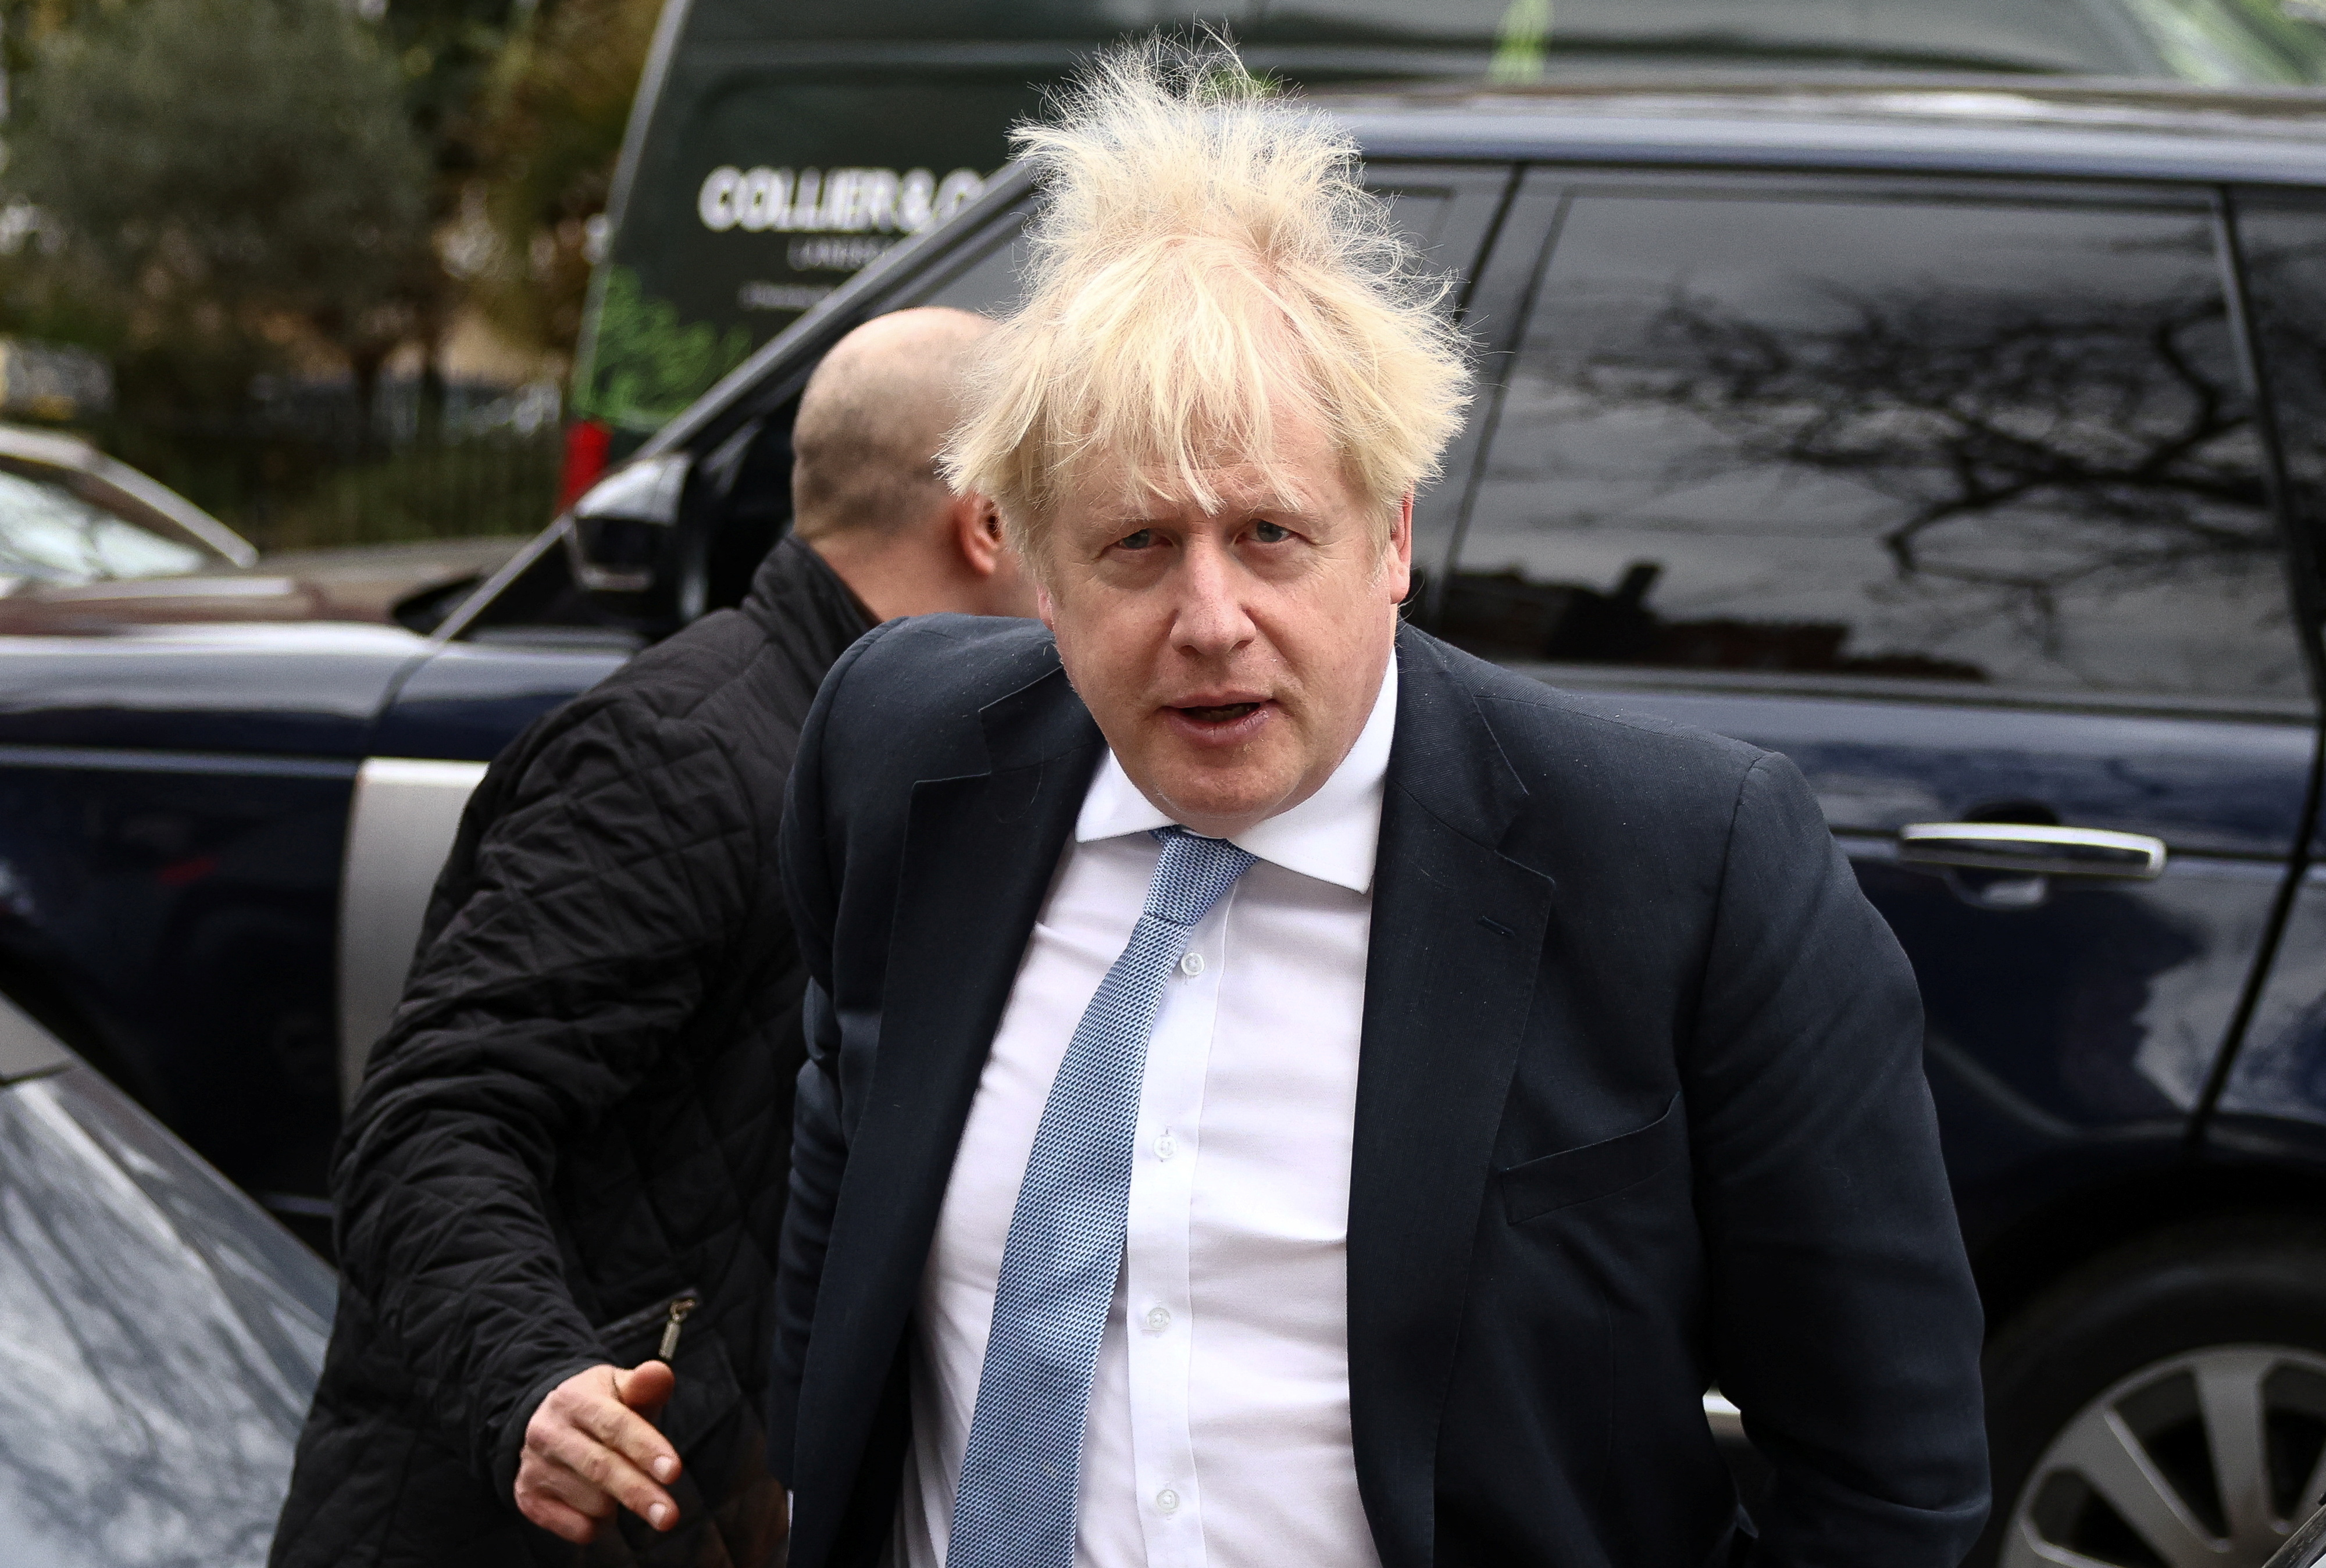 El intento de descargo de Boris Johnson sobre las fiestas durante la pandemia: “Los llevé al engaño, pero lo hice de buena fe”